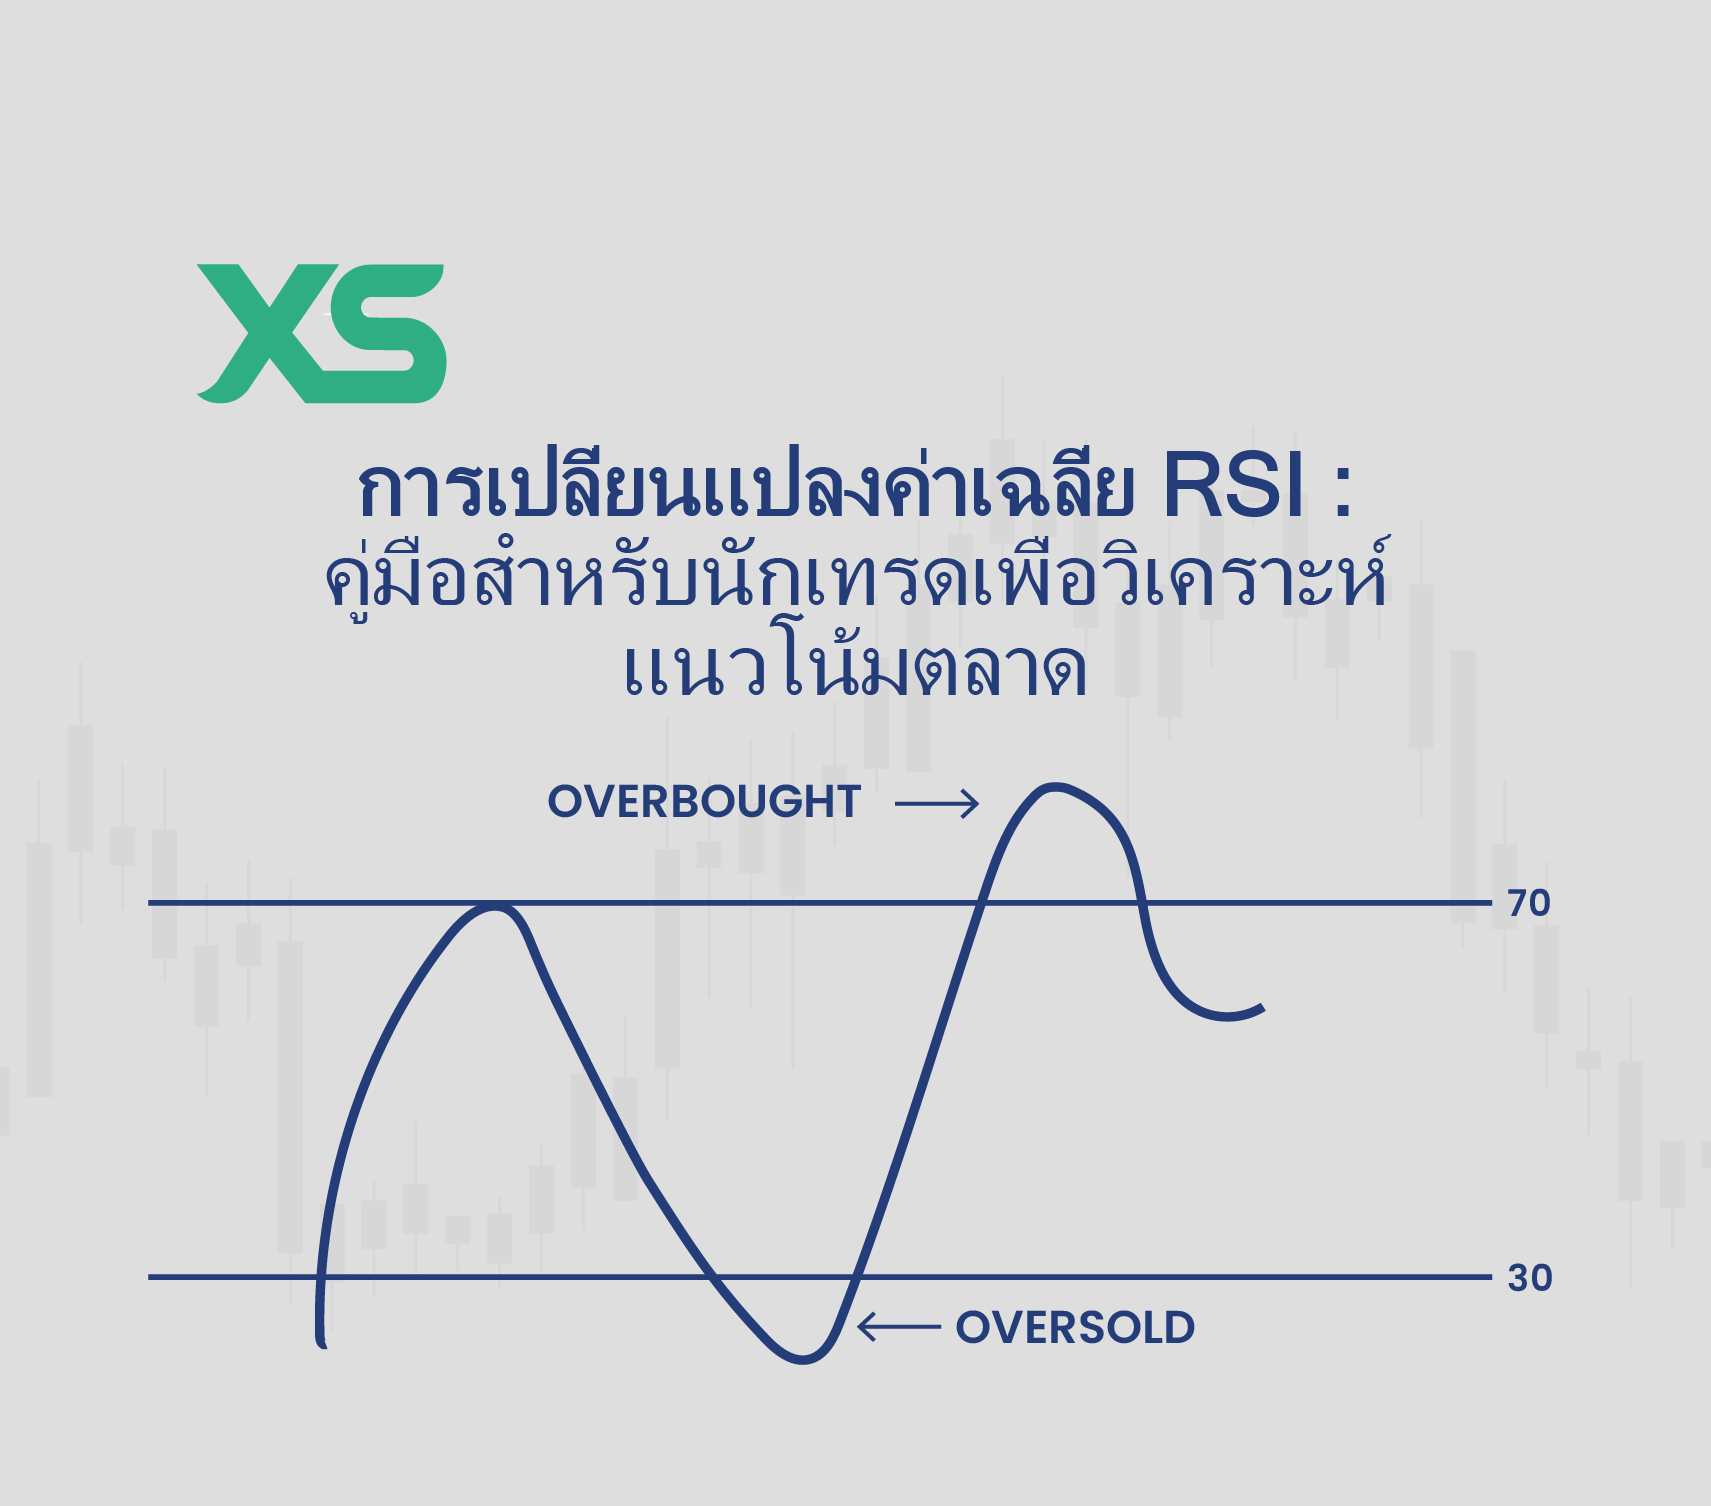 การเปลี่ยนแปลงค่าเฉลี่ย RSI - XS